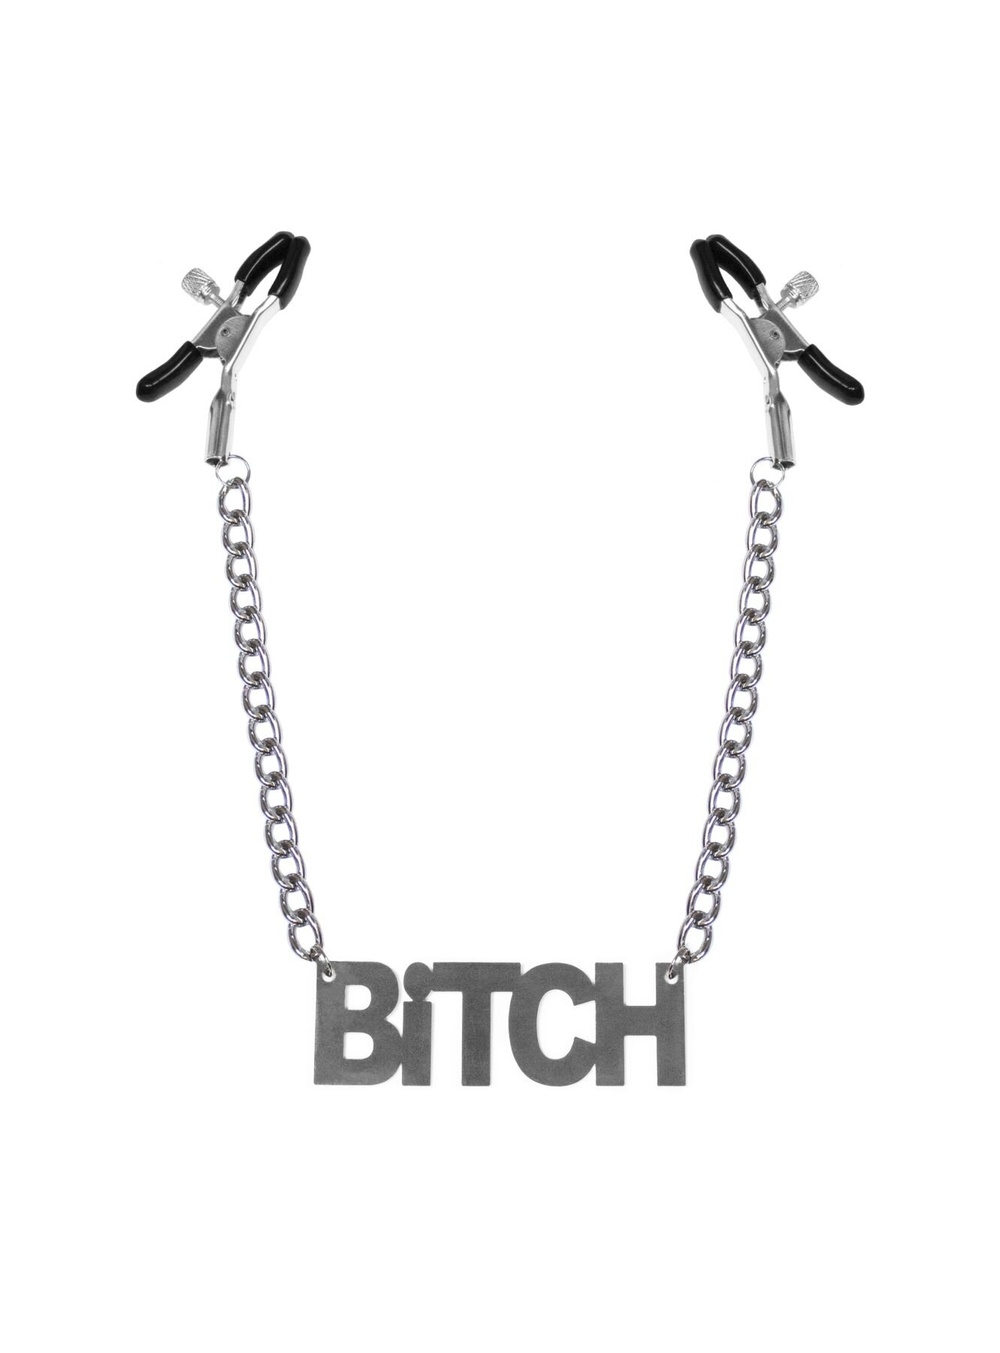 Зажимы для сосков Bitch, Feral Feelings - Nipple clamps Bitch, серебро/черный фото